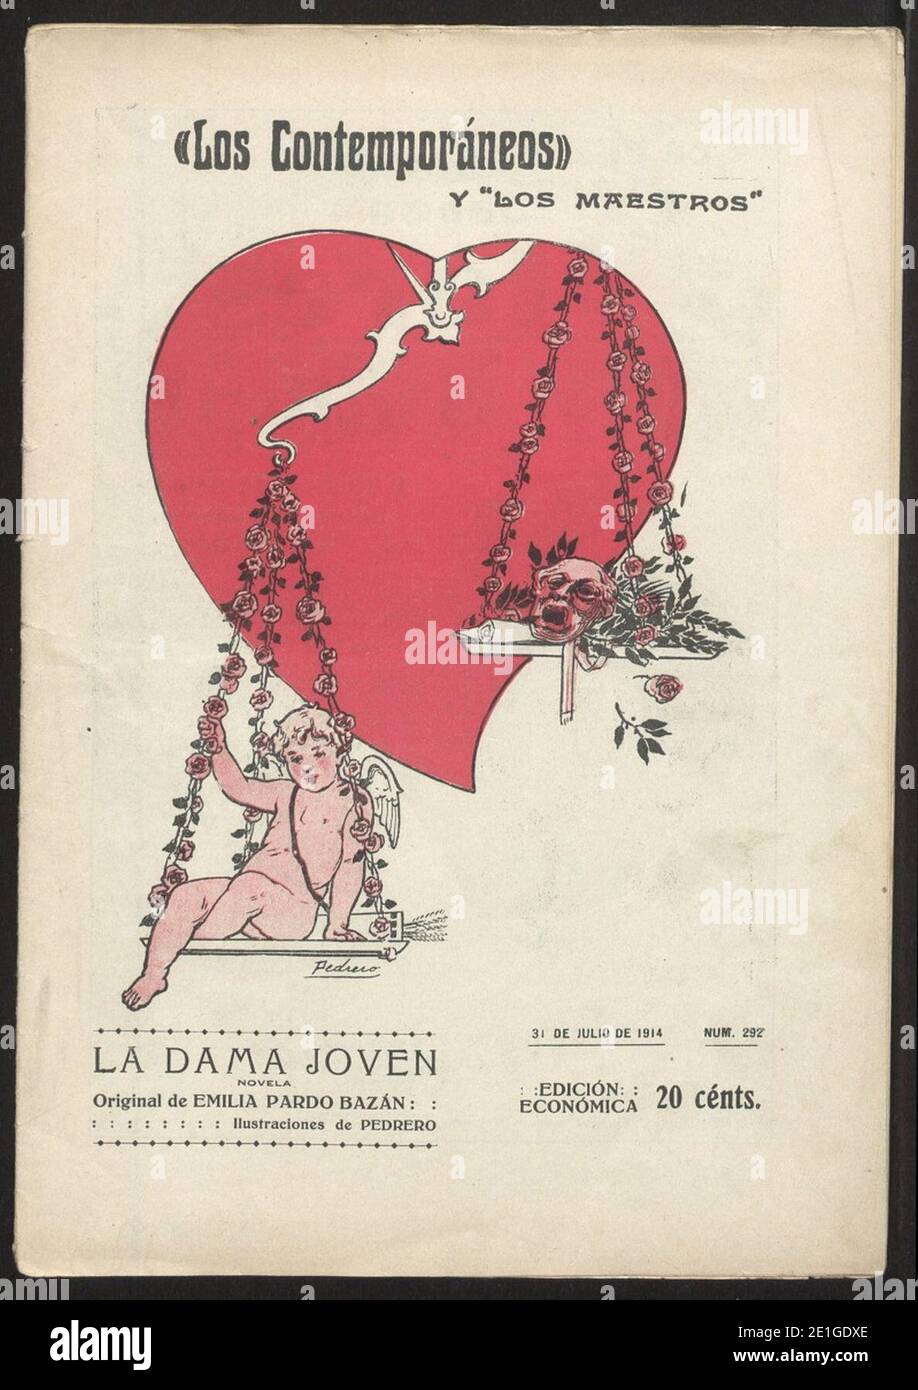 Los Contemporáneos, La Dama Joven, 31.7.1914, nº 292, cover by Mariano Pedrero. Stock Photo